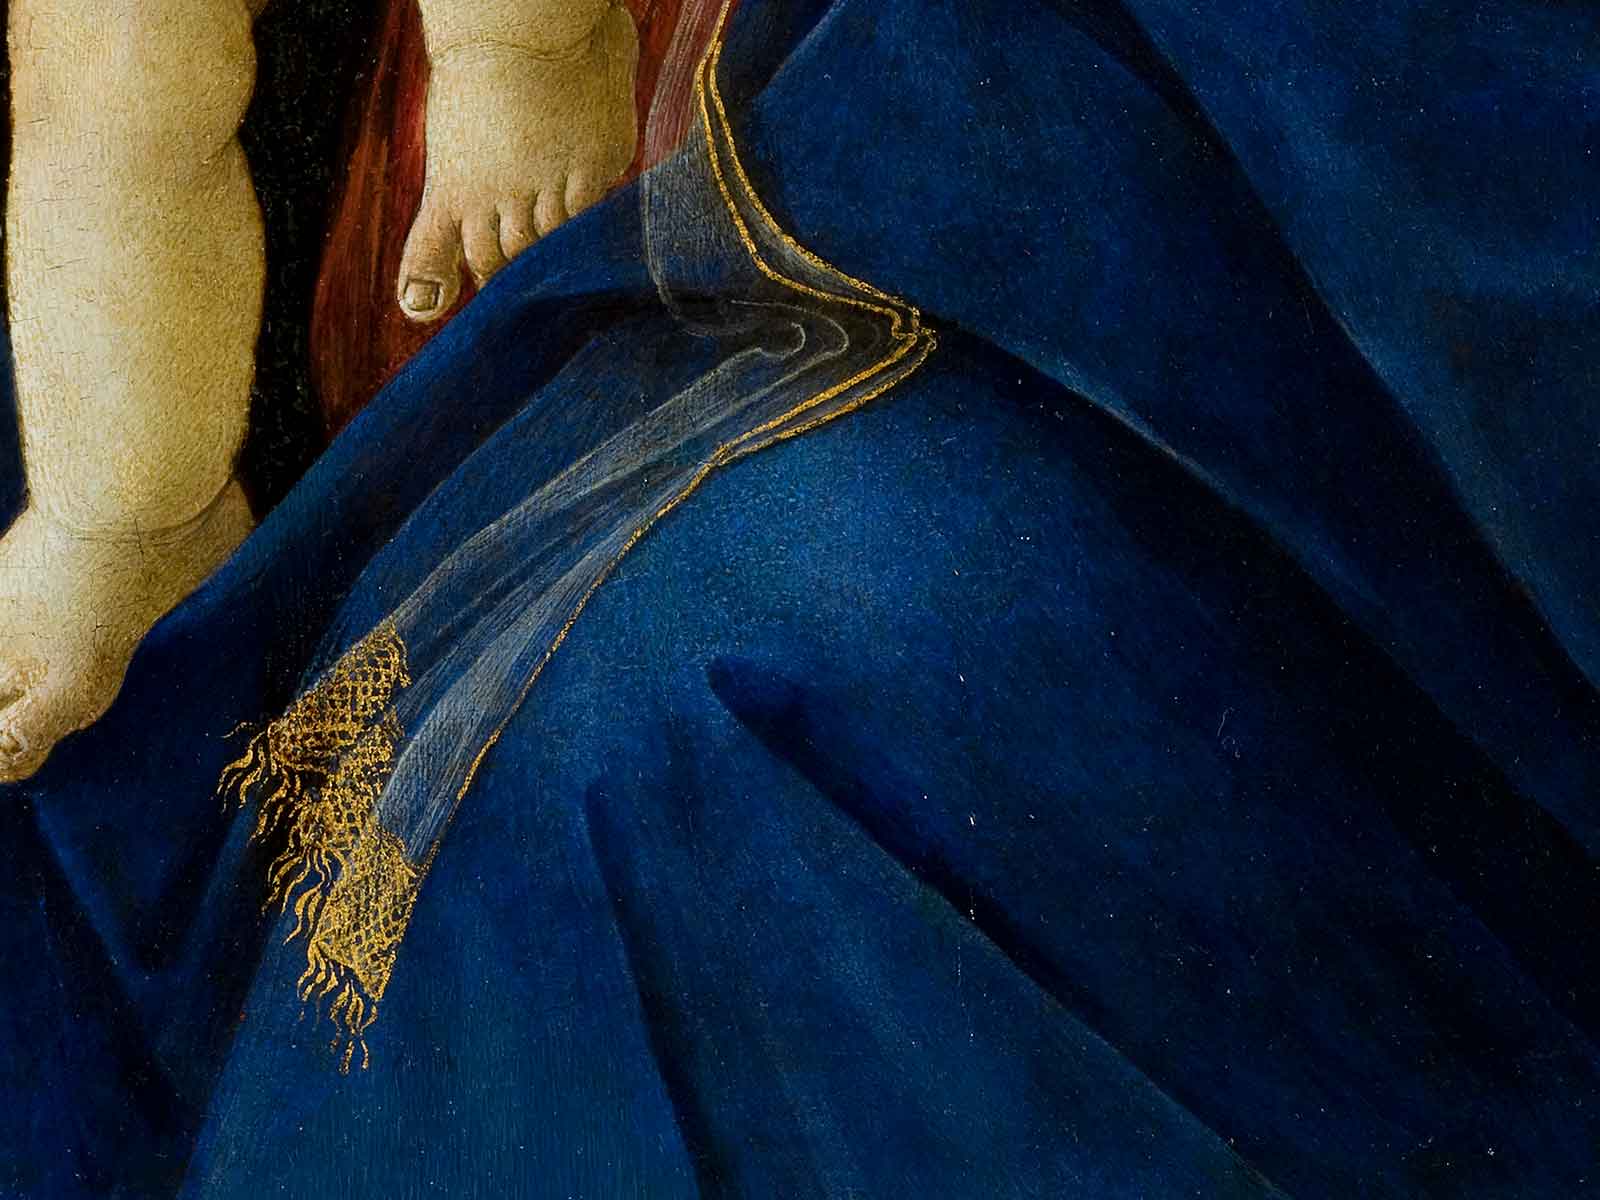 Dettaglio della Madonna del libro di Sandro Botticelli